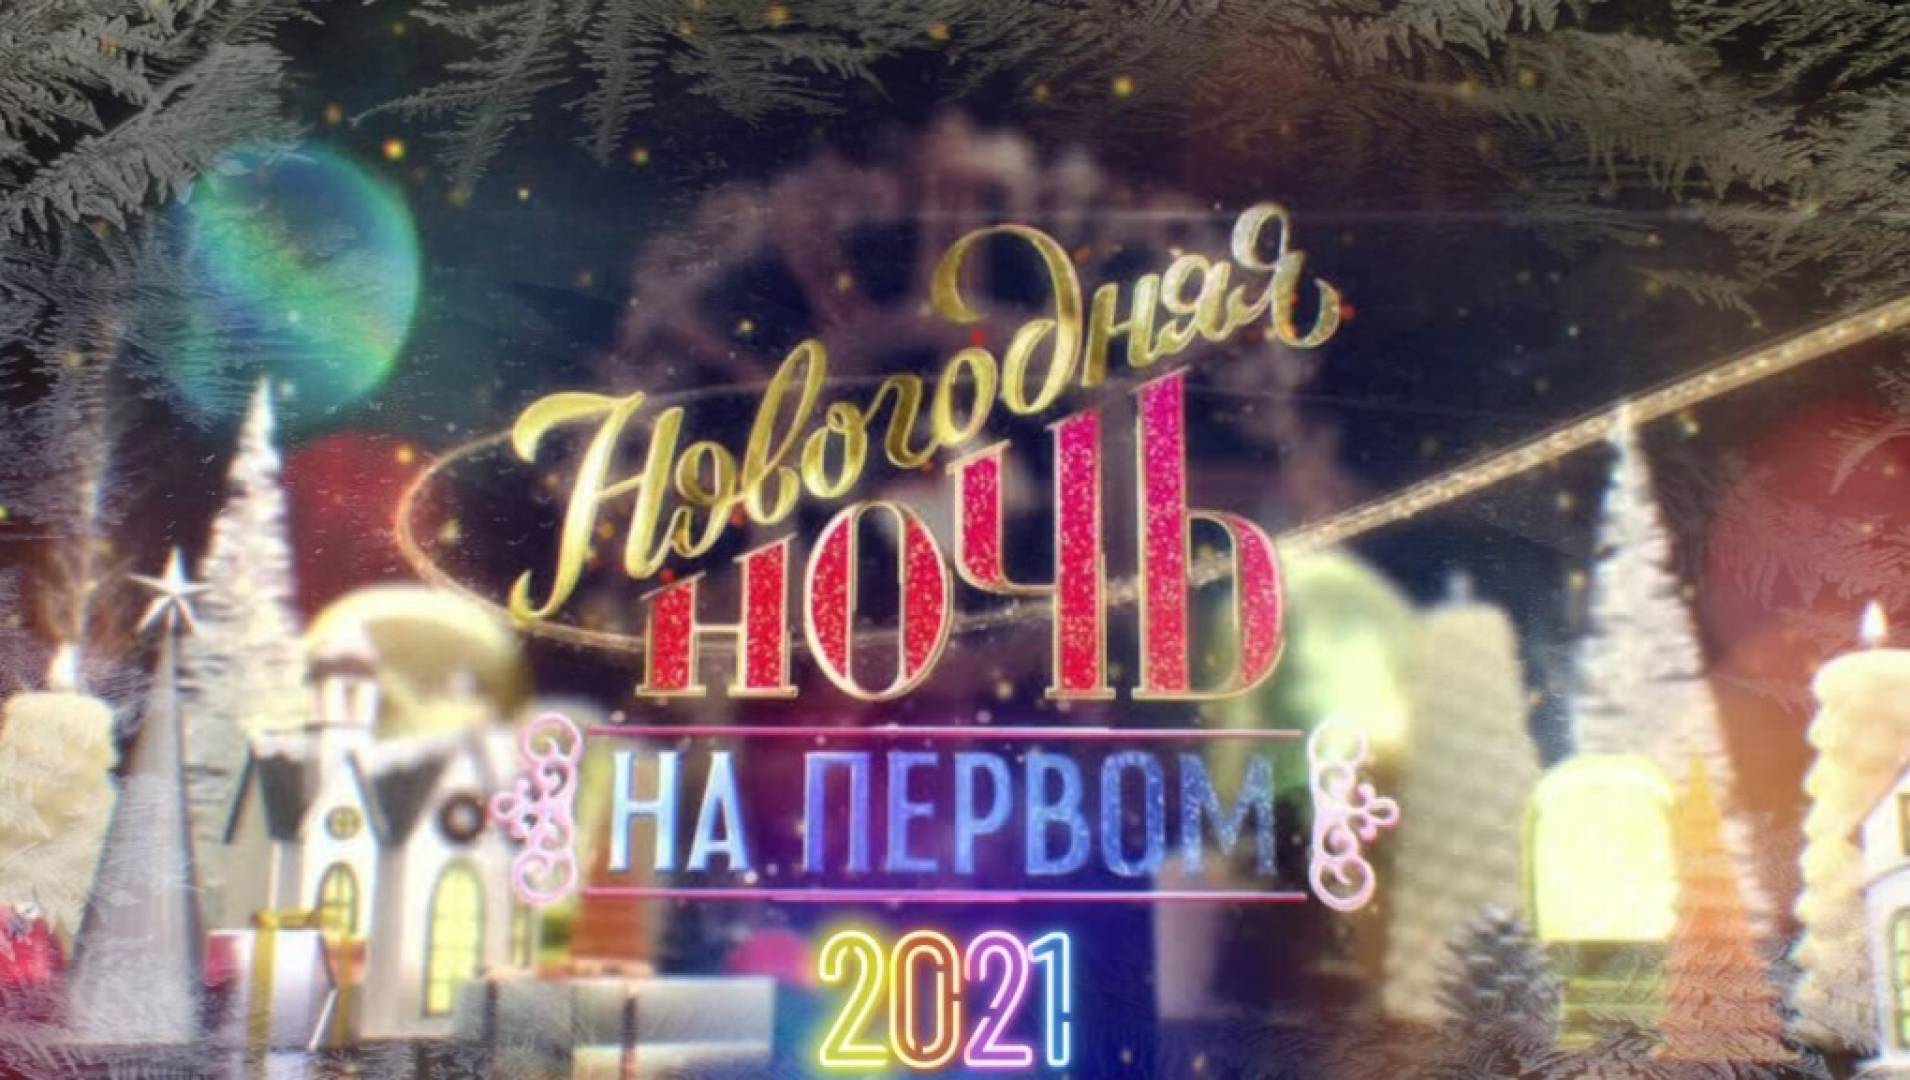 ТВ-шоу «Новогодняя ночь на Первом (2021)» 2020: актеры, время выхода и  описание на Первом канале / Channel One Russia